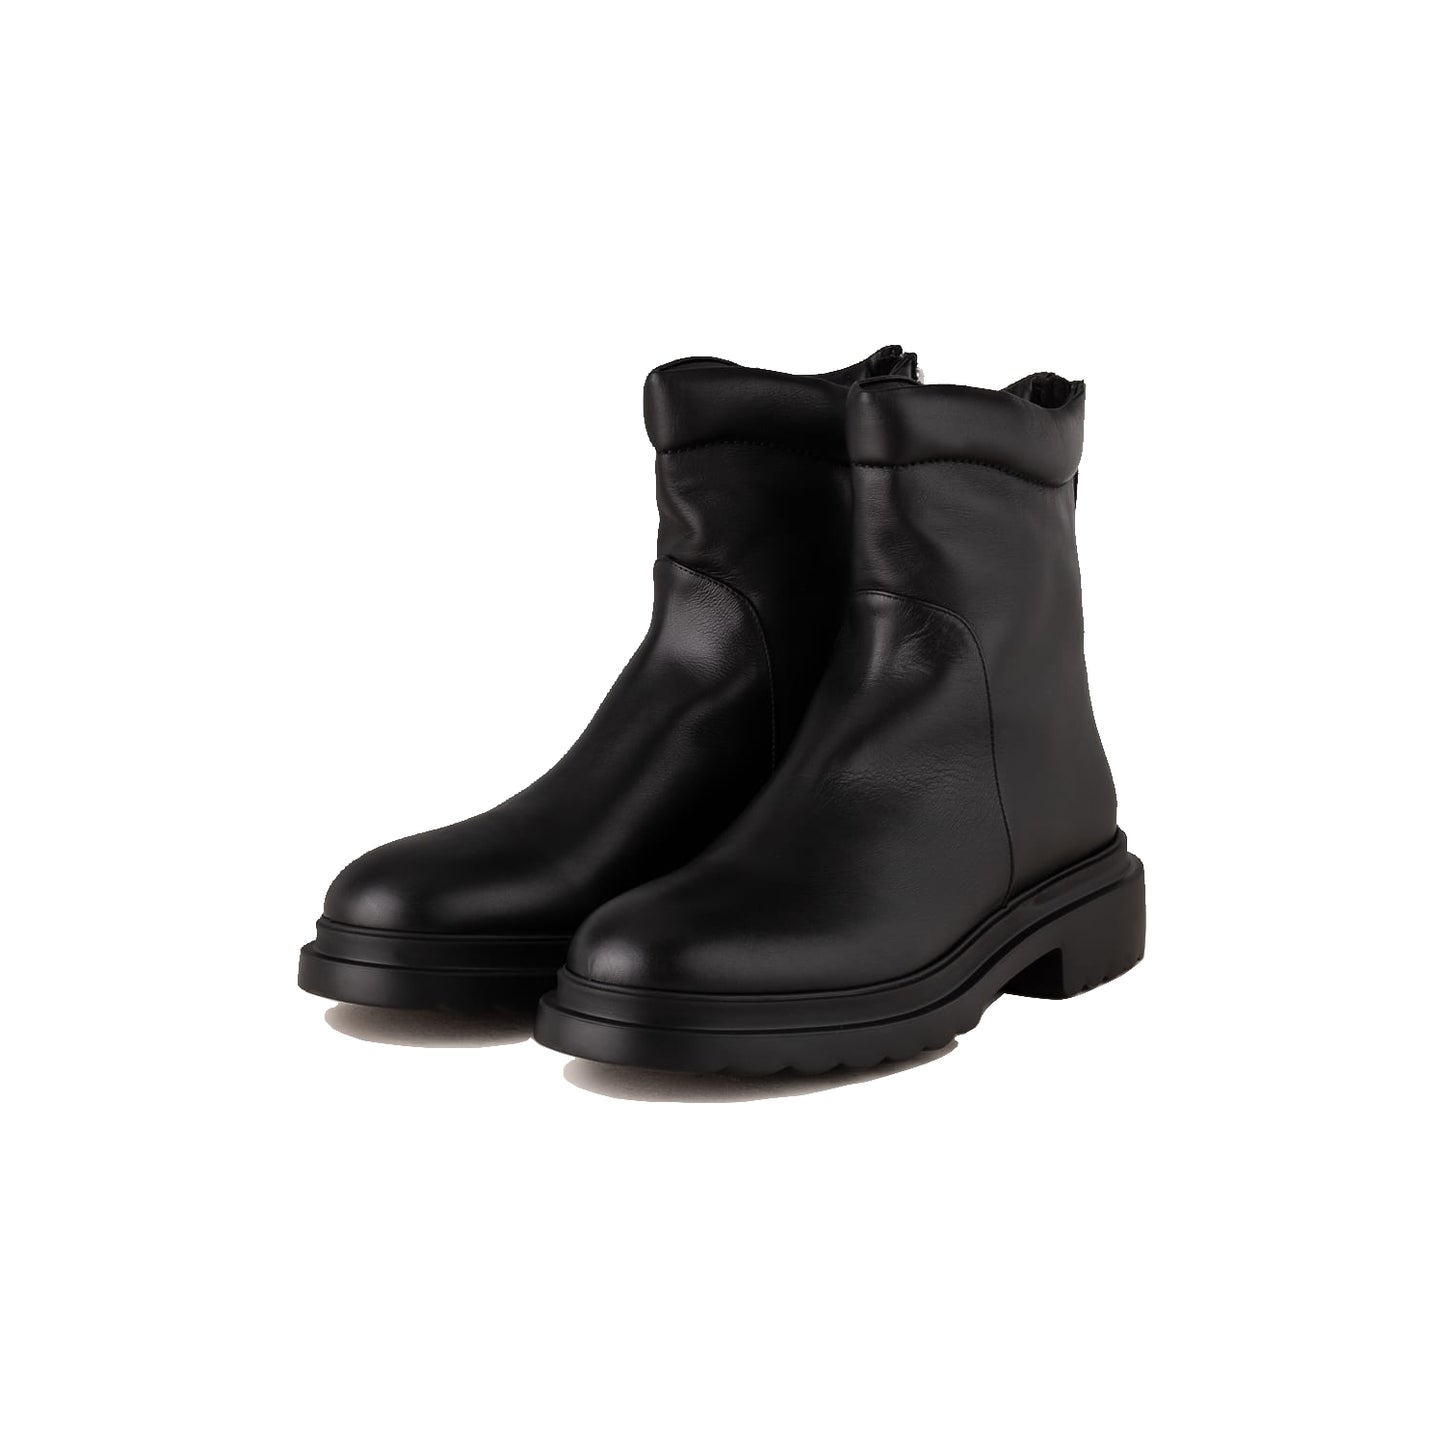 Pomme d´or boots rey in schwarzen Glattleder. Sportive Stiefelette mit Sneakers Leisten von Pomme d´or online kaufen. Low boots mit Reißverschluss und 3cm hoher Profilsohle aus der neuen Pomme d´or Kollektion.